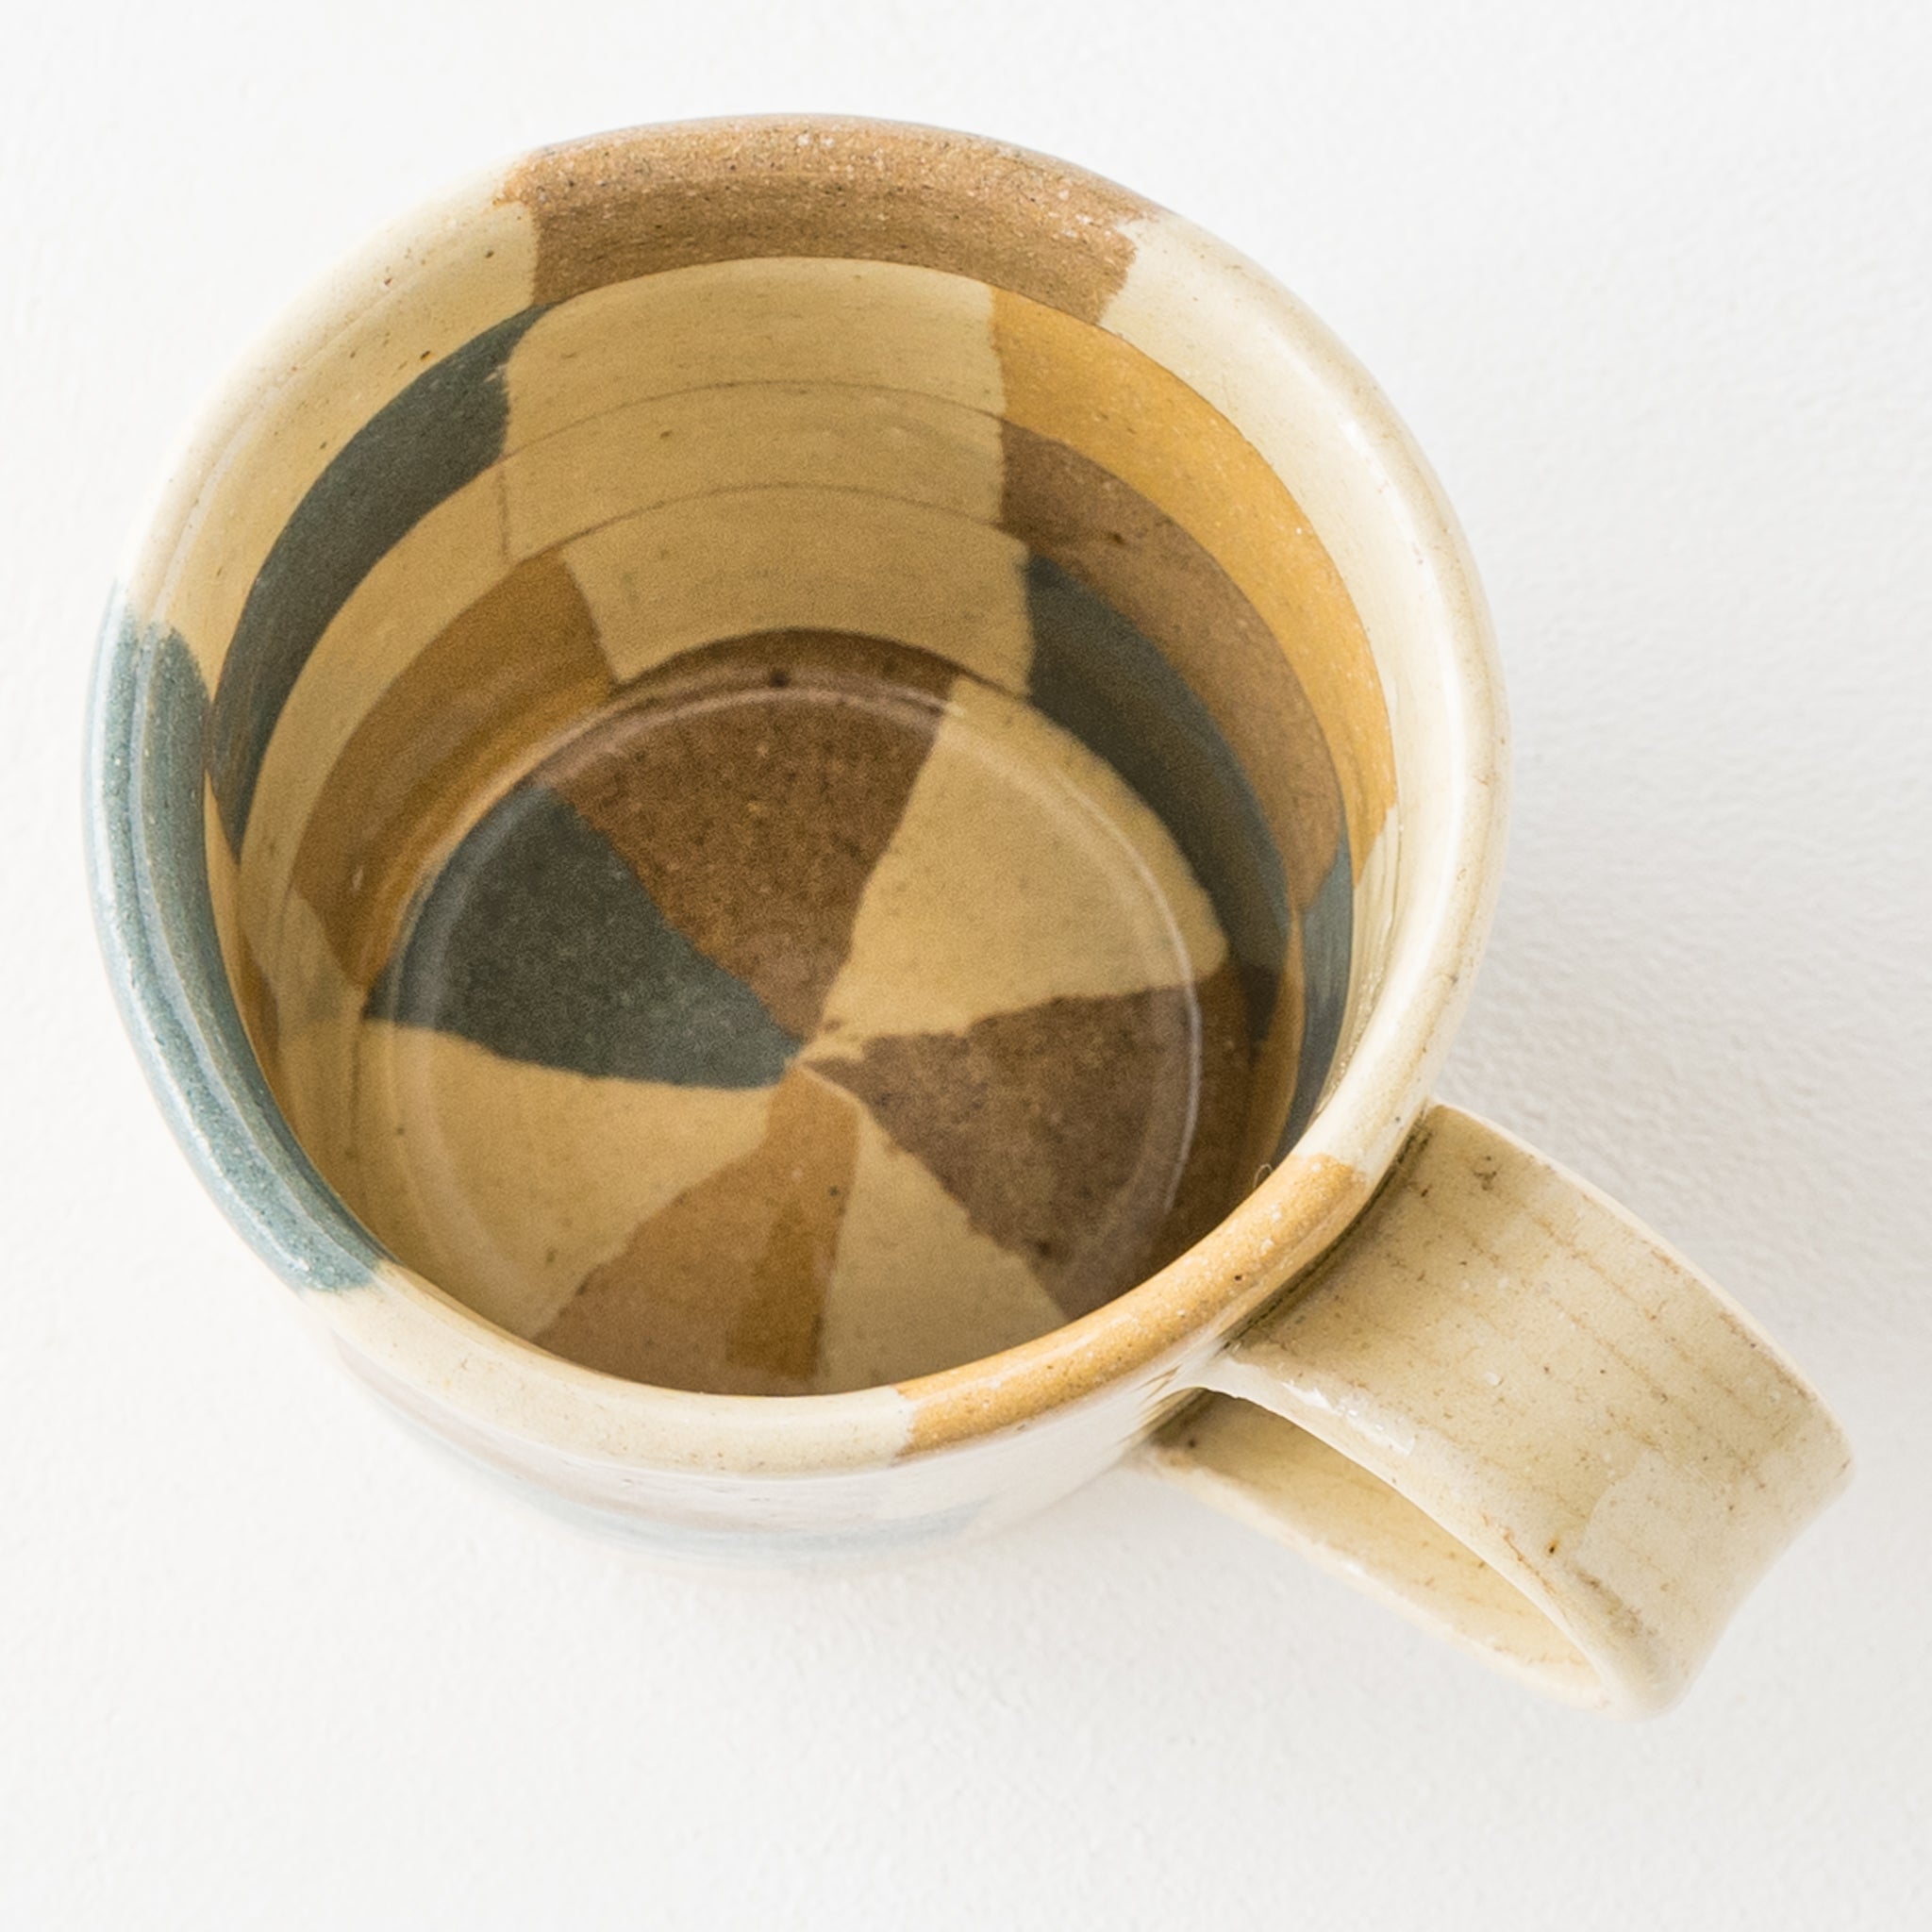 Hanako Sakashita's kneaded mug with cute patterns on the inside and outside.